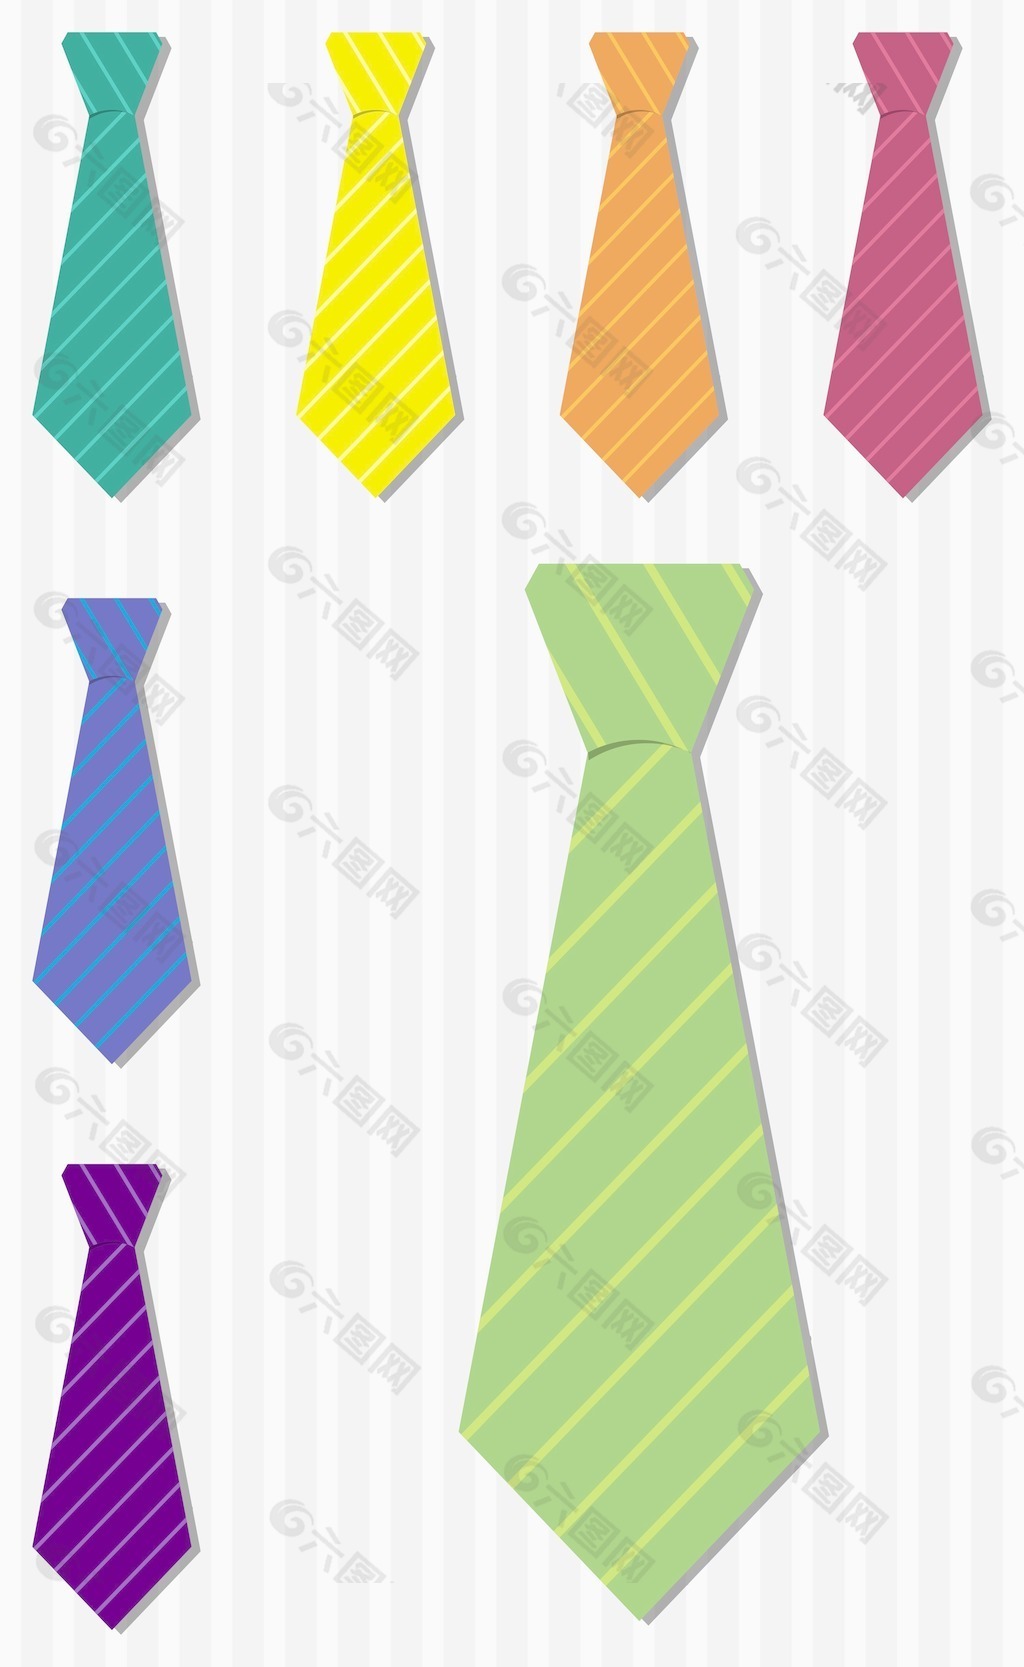 明亮的条纹的真丝领带贴纸矢量格式